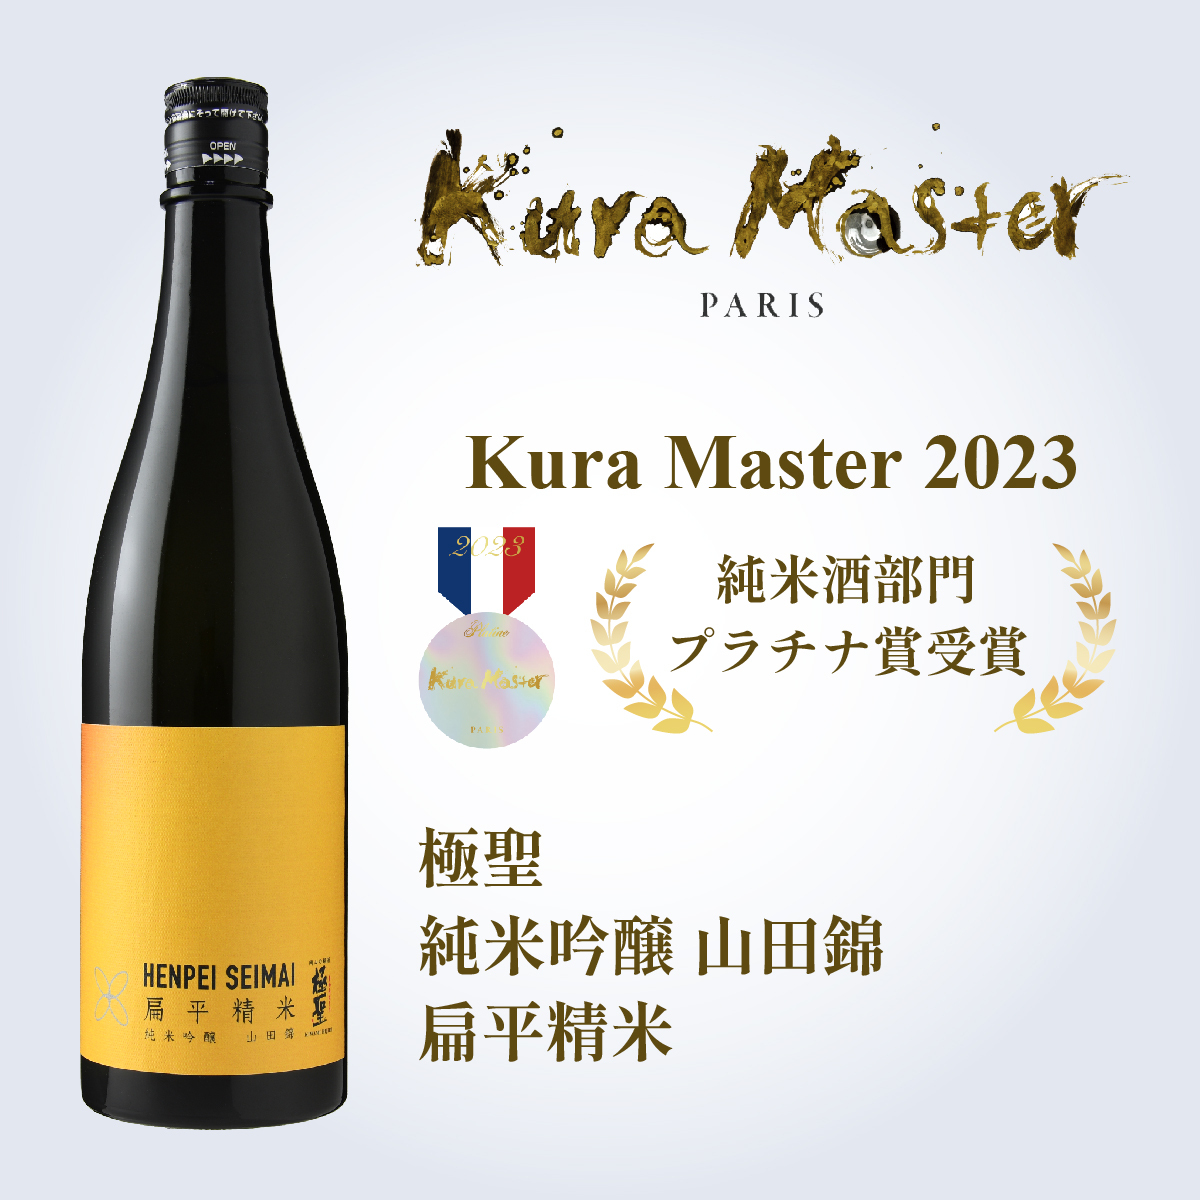 2023年度 Kura Master コンクール 2023年度 純米酒部門 プラチナ賞 受賞